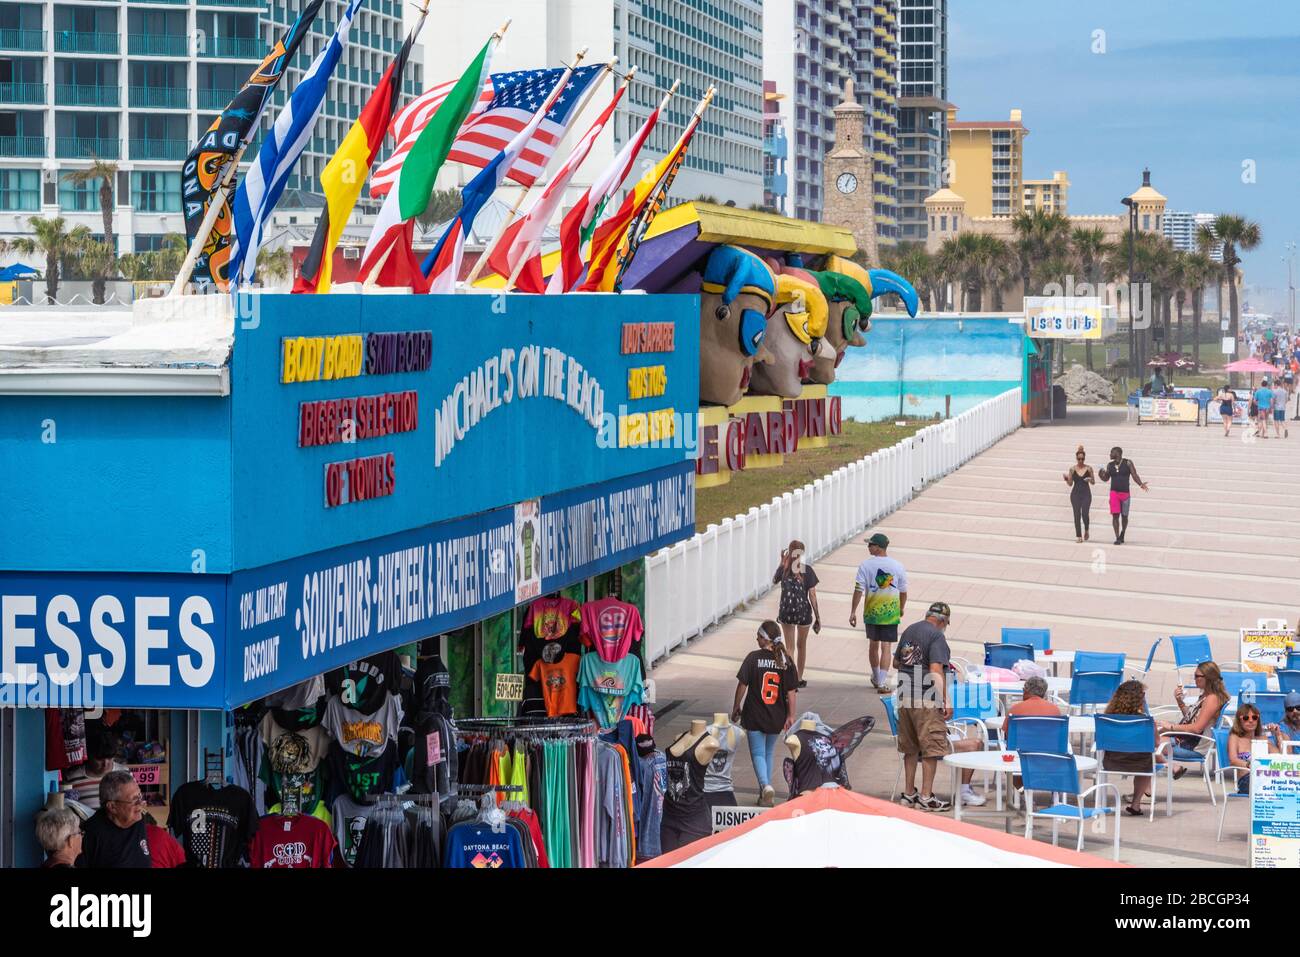 Daytona Beach, Florida während der Frühlingspause 2020 vor der Strandschließung (für alle außer sportbezogenen Aktivitäten) aufgrund des Coronavirus Ausbruchs. Stockfoto